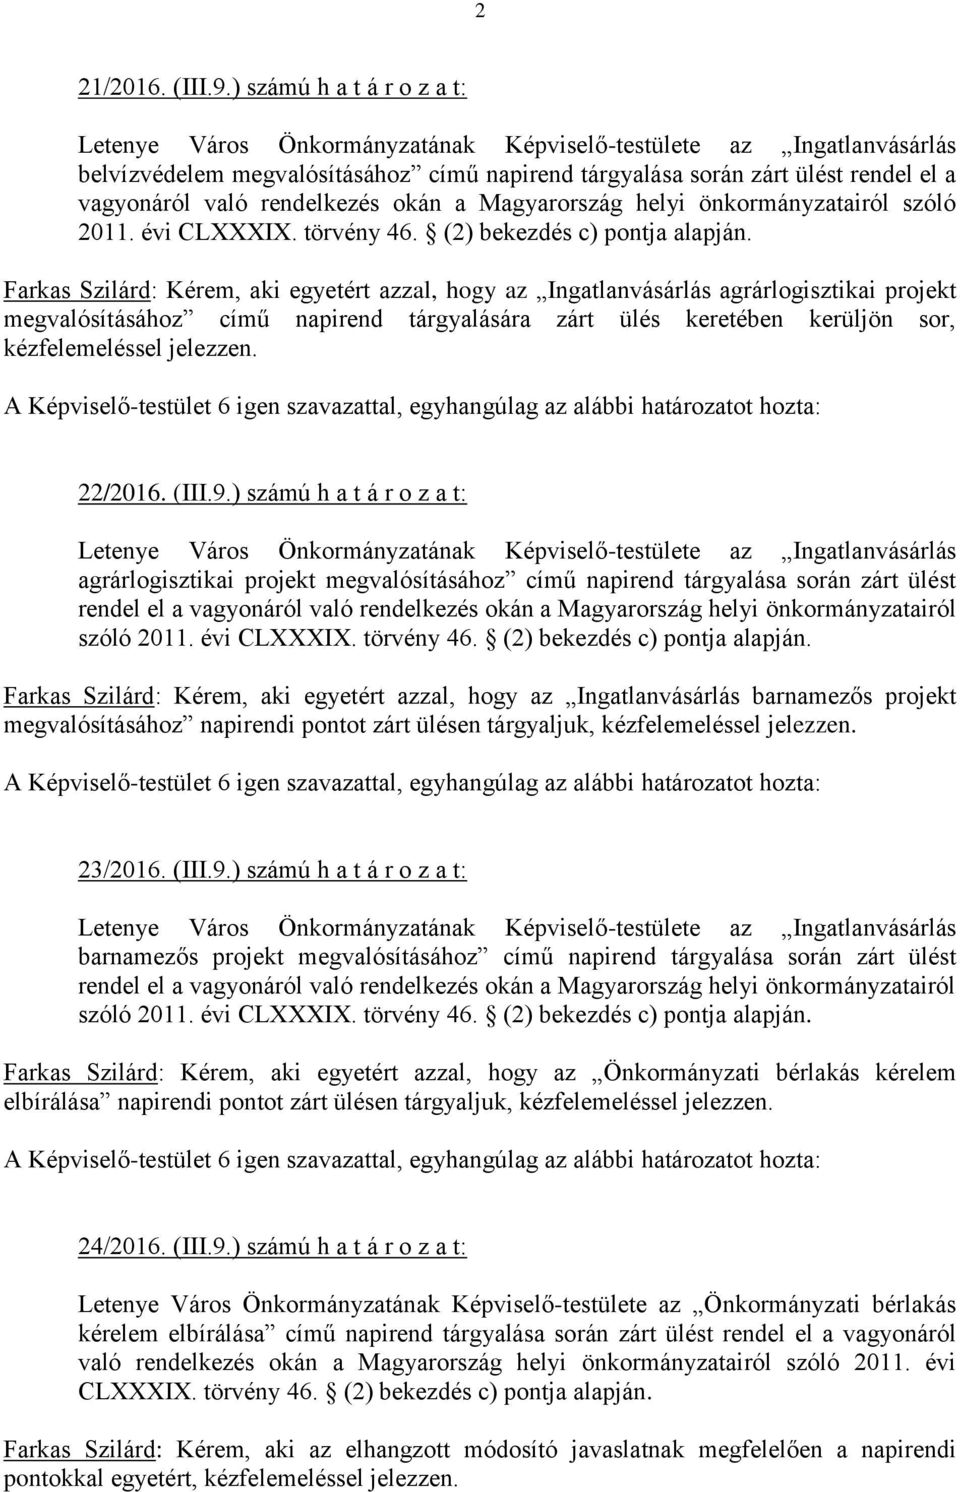 rendelkezés okán a Magyarország helyi önkormányzatairól szóló 2011. évi CLXXXIX. törvény 46. (2) bekezdés c) pontja alapján.